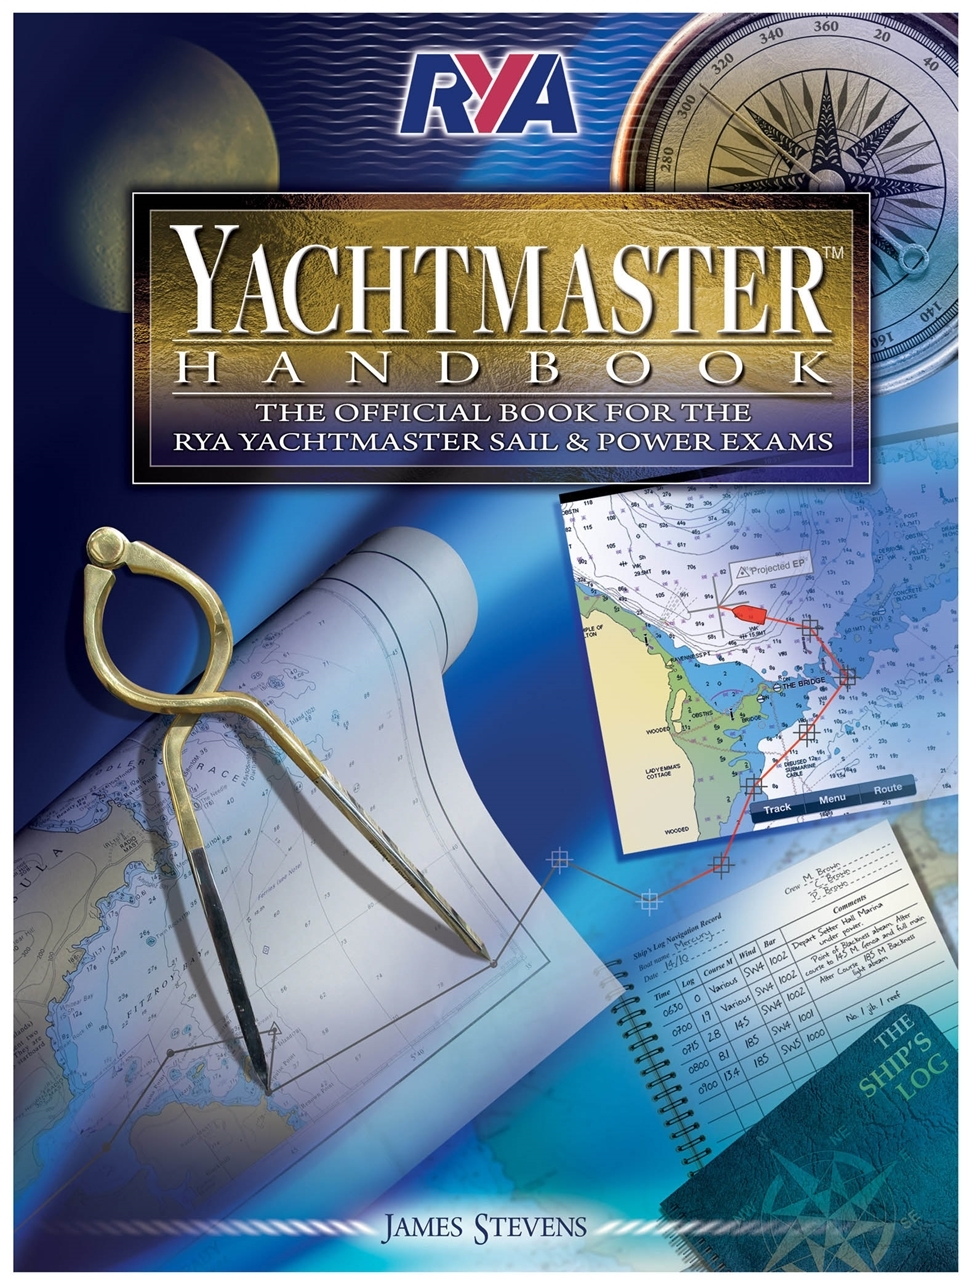 rya yachtmaster handbook pdf free download